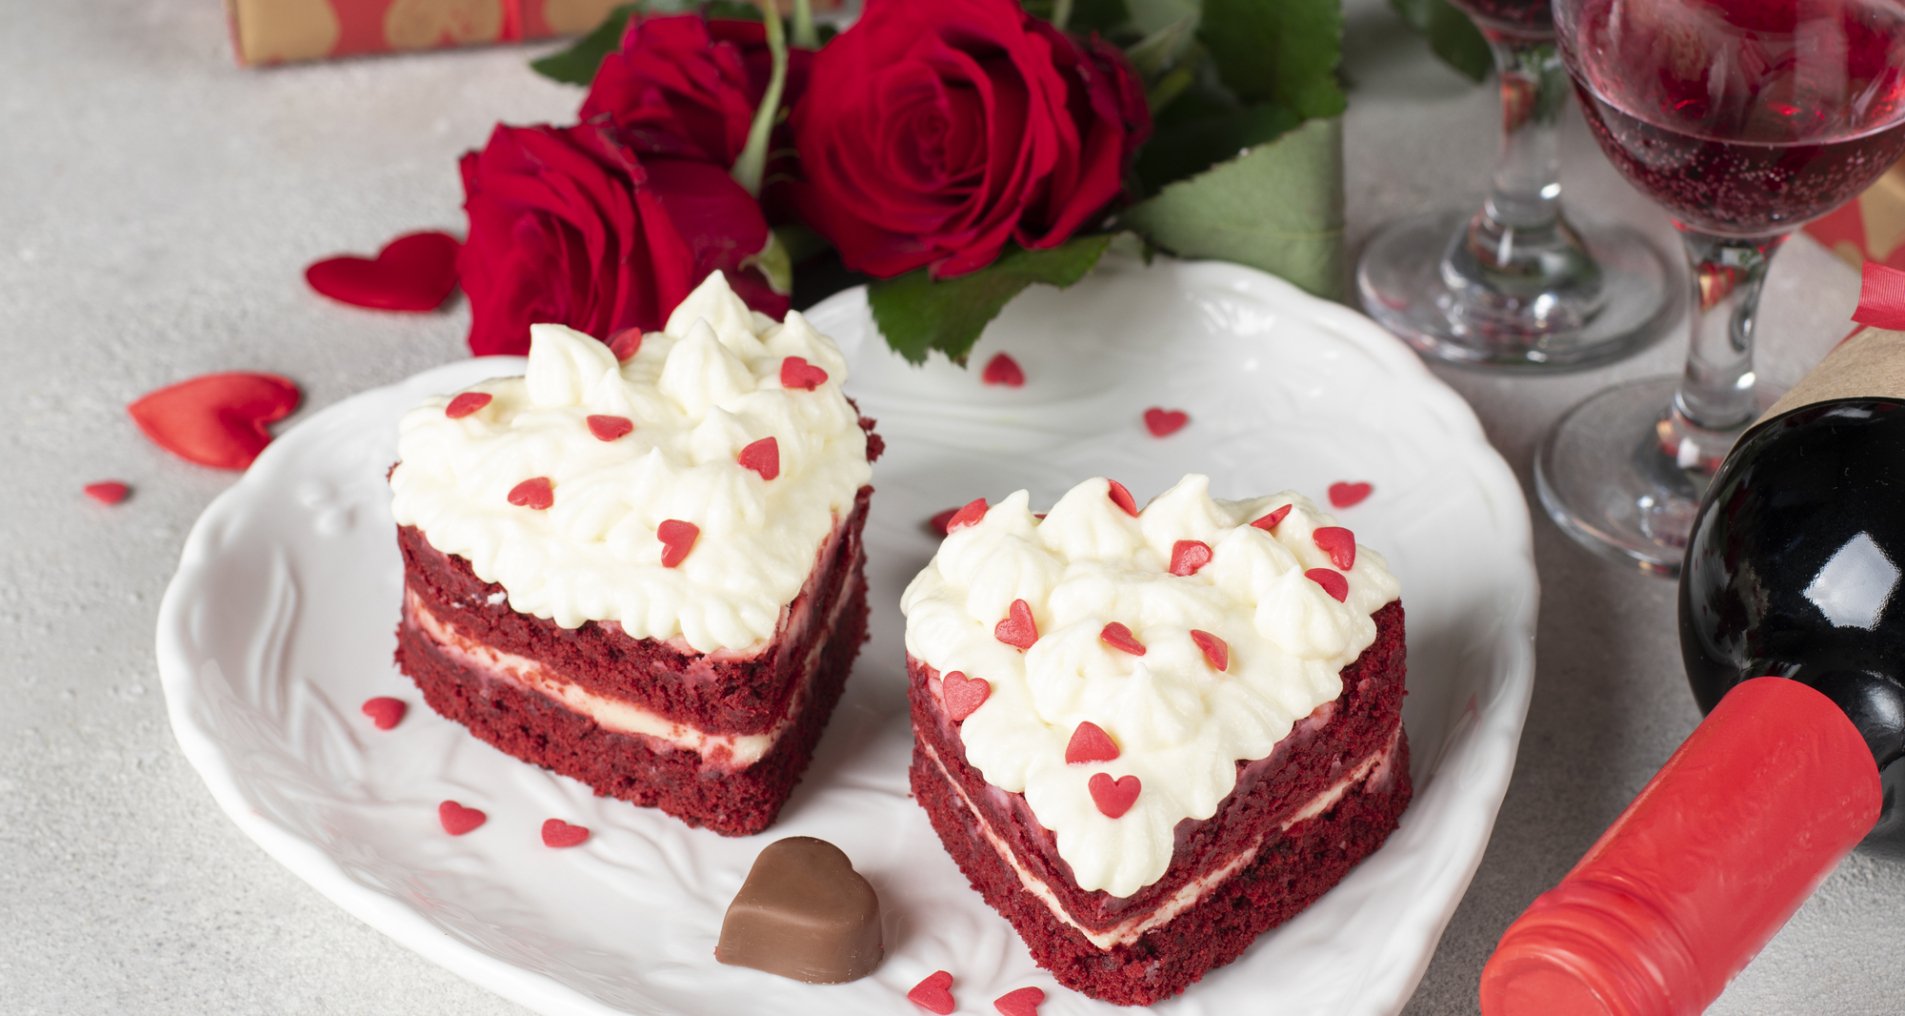 Десерты к Дню святого Валентина - рецепты с фото и видео на натяжныепотолкибрянск.рф